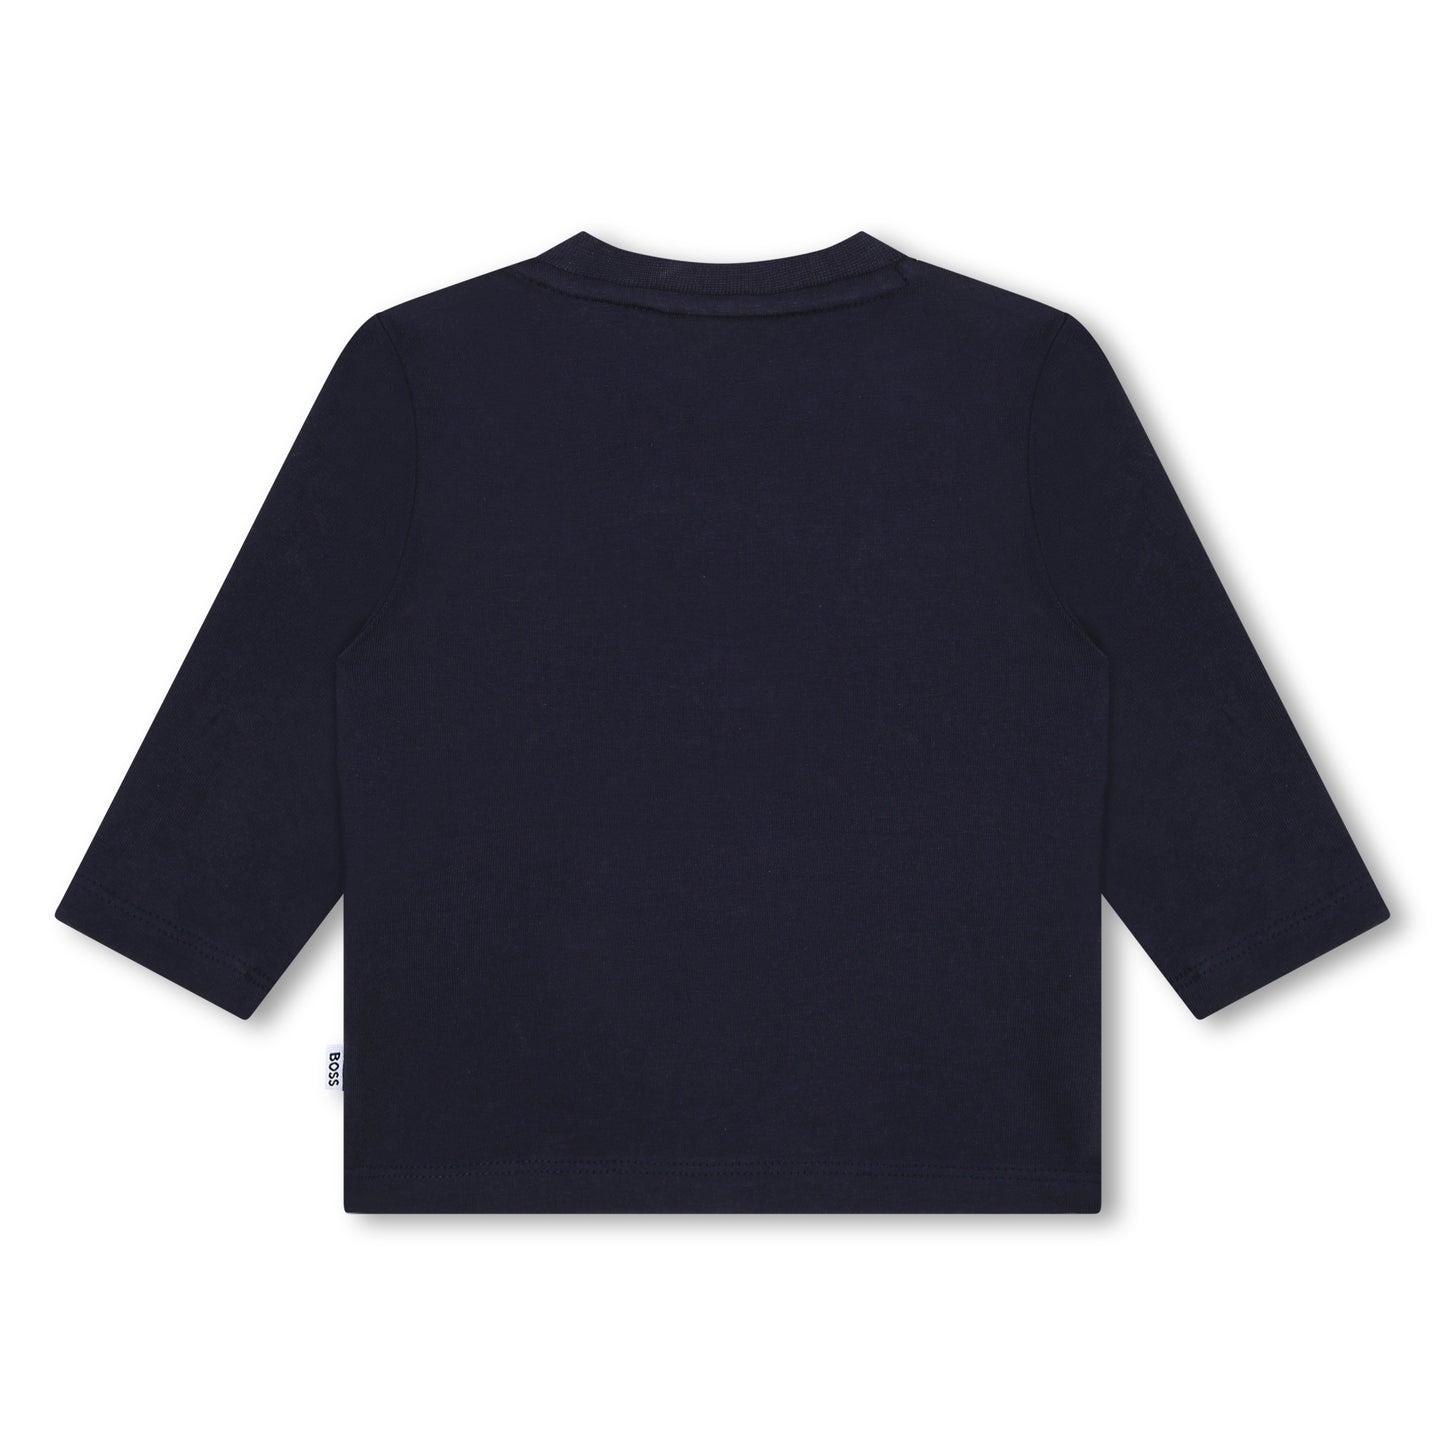 Hugo Boss Toddler Navy T-Shirt_J05A28-849